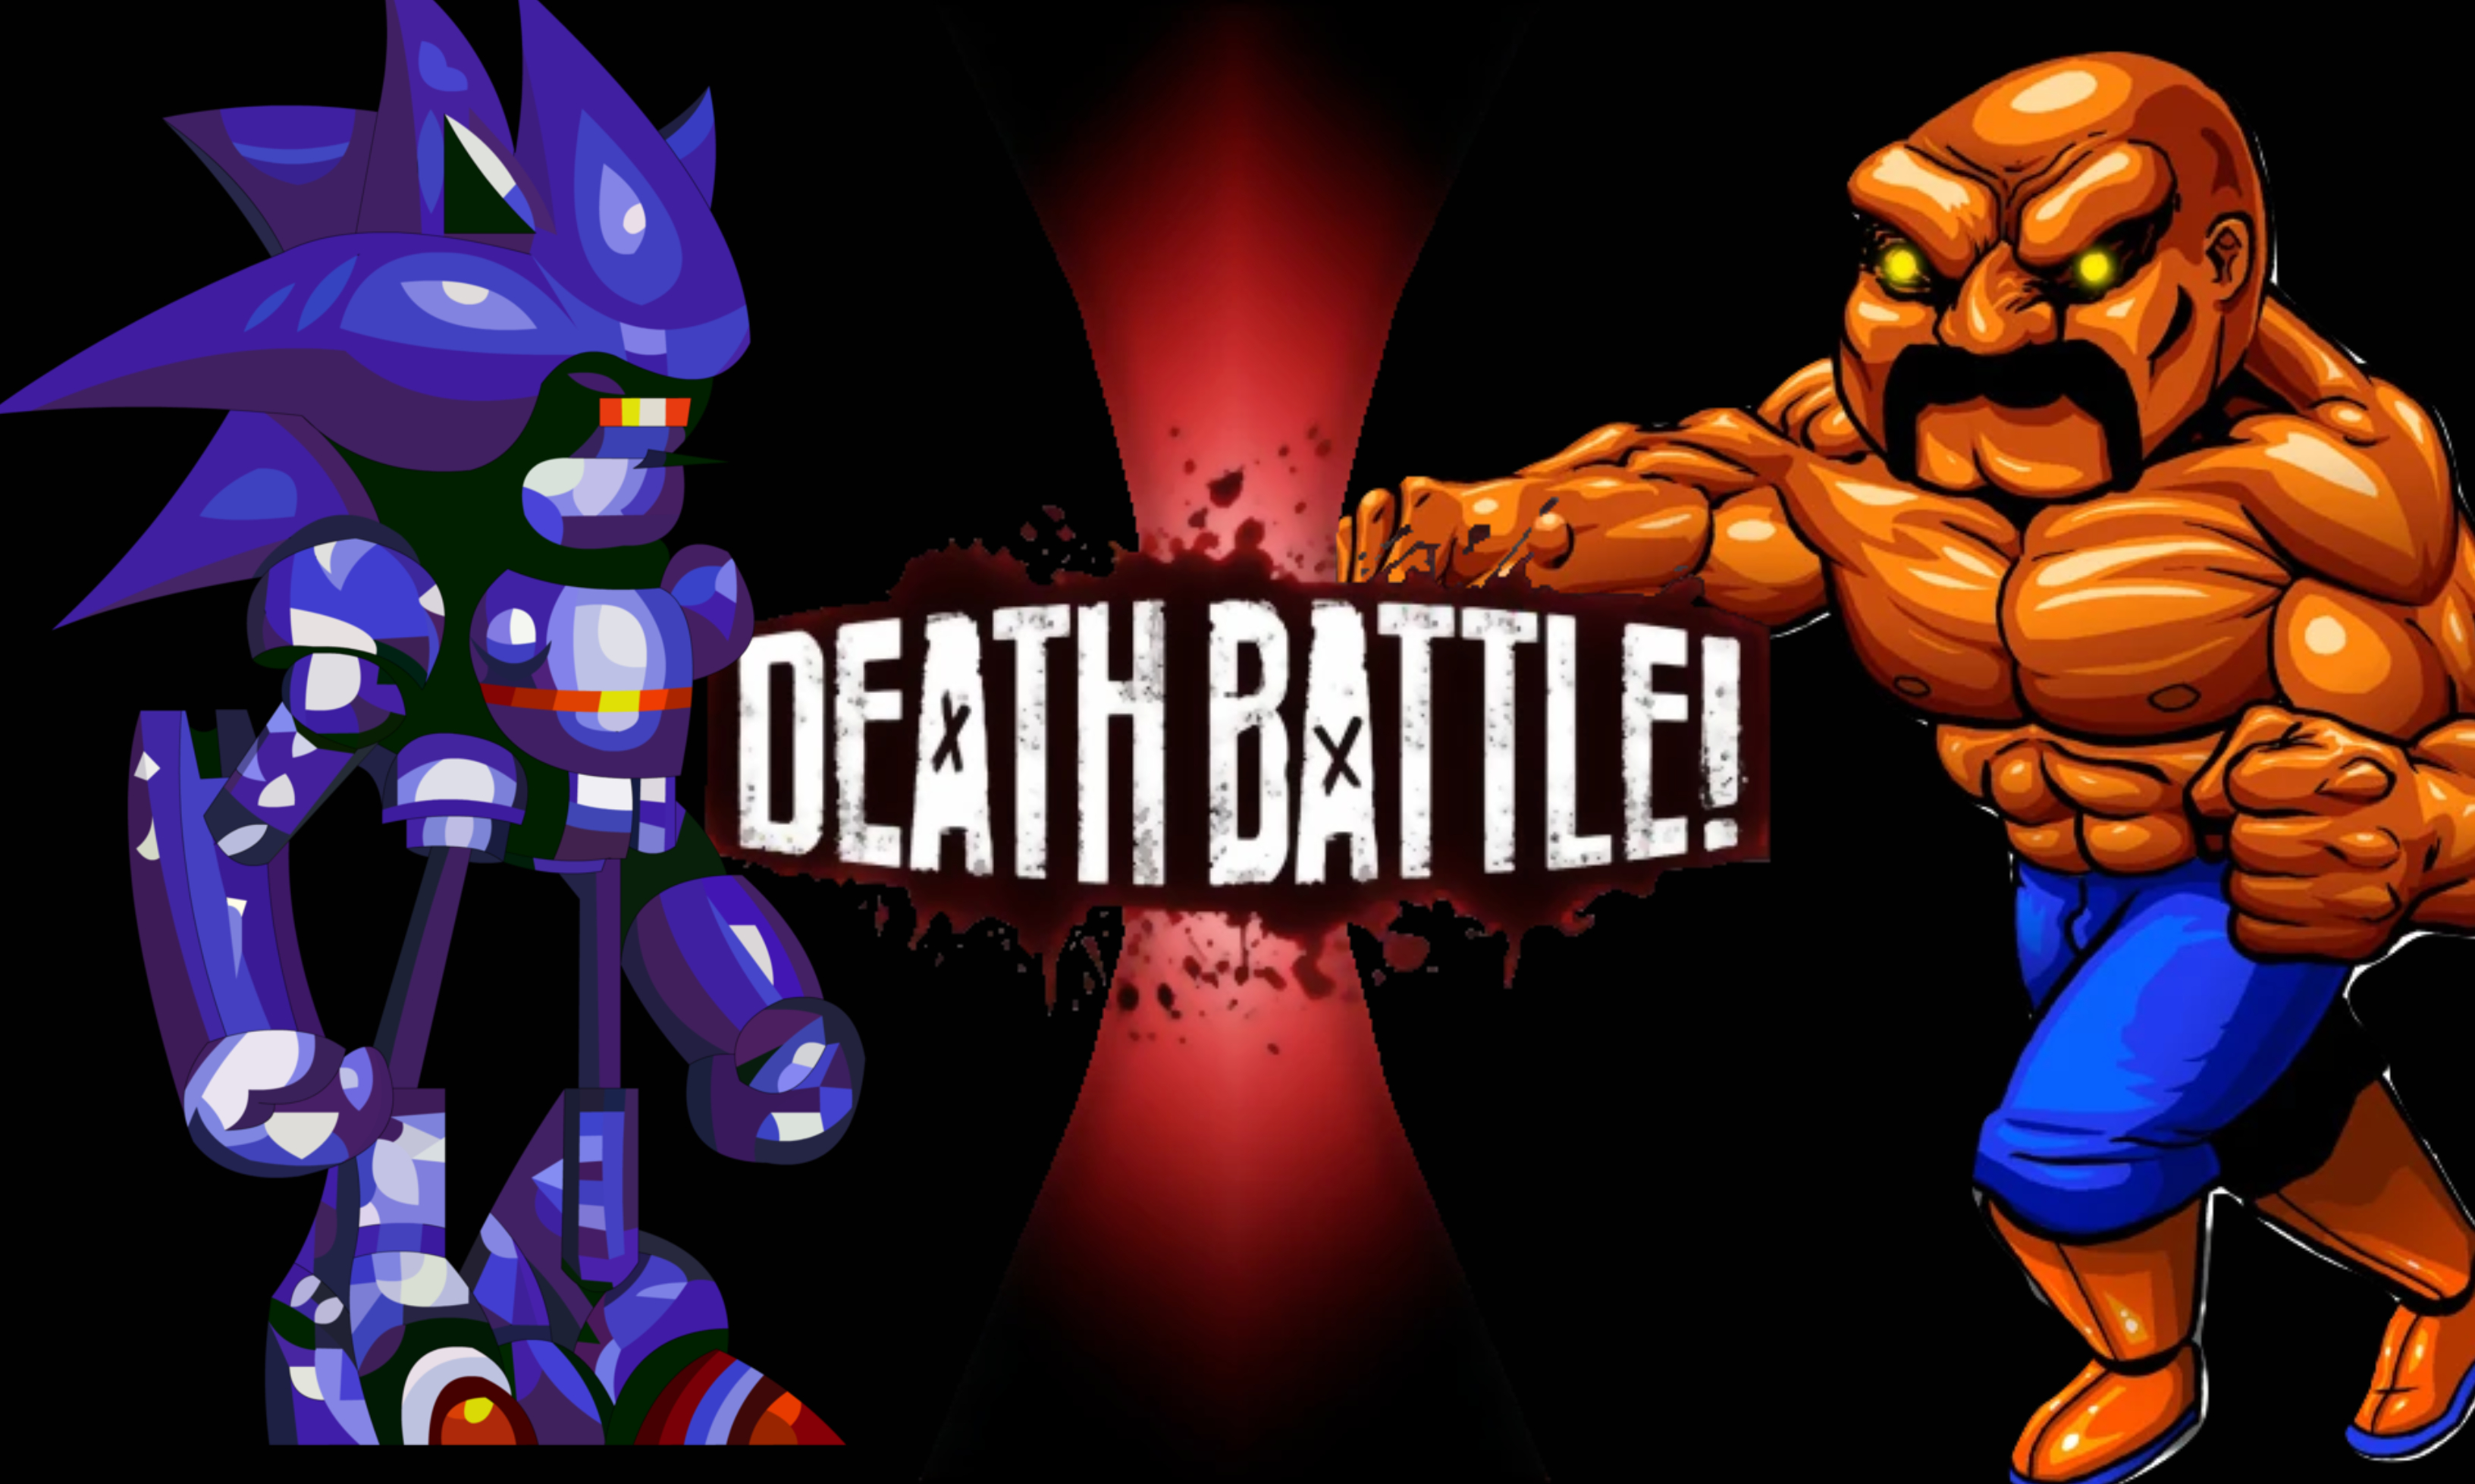 Mecha Sonic Battles